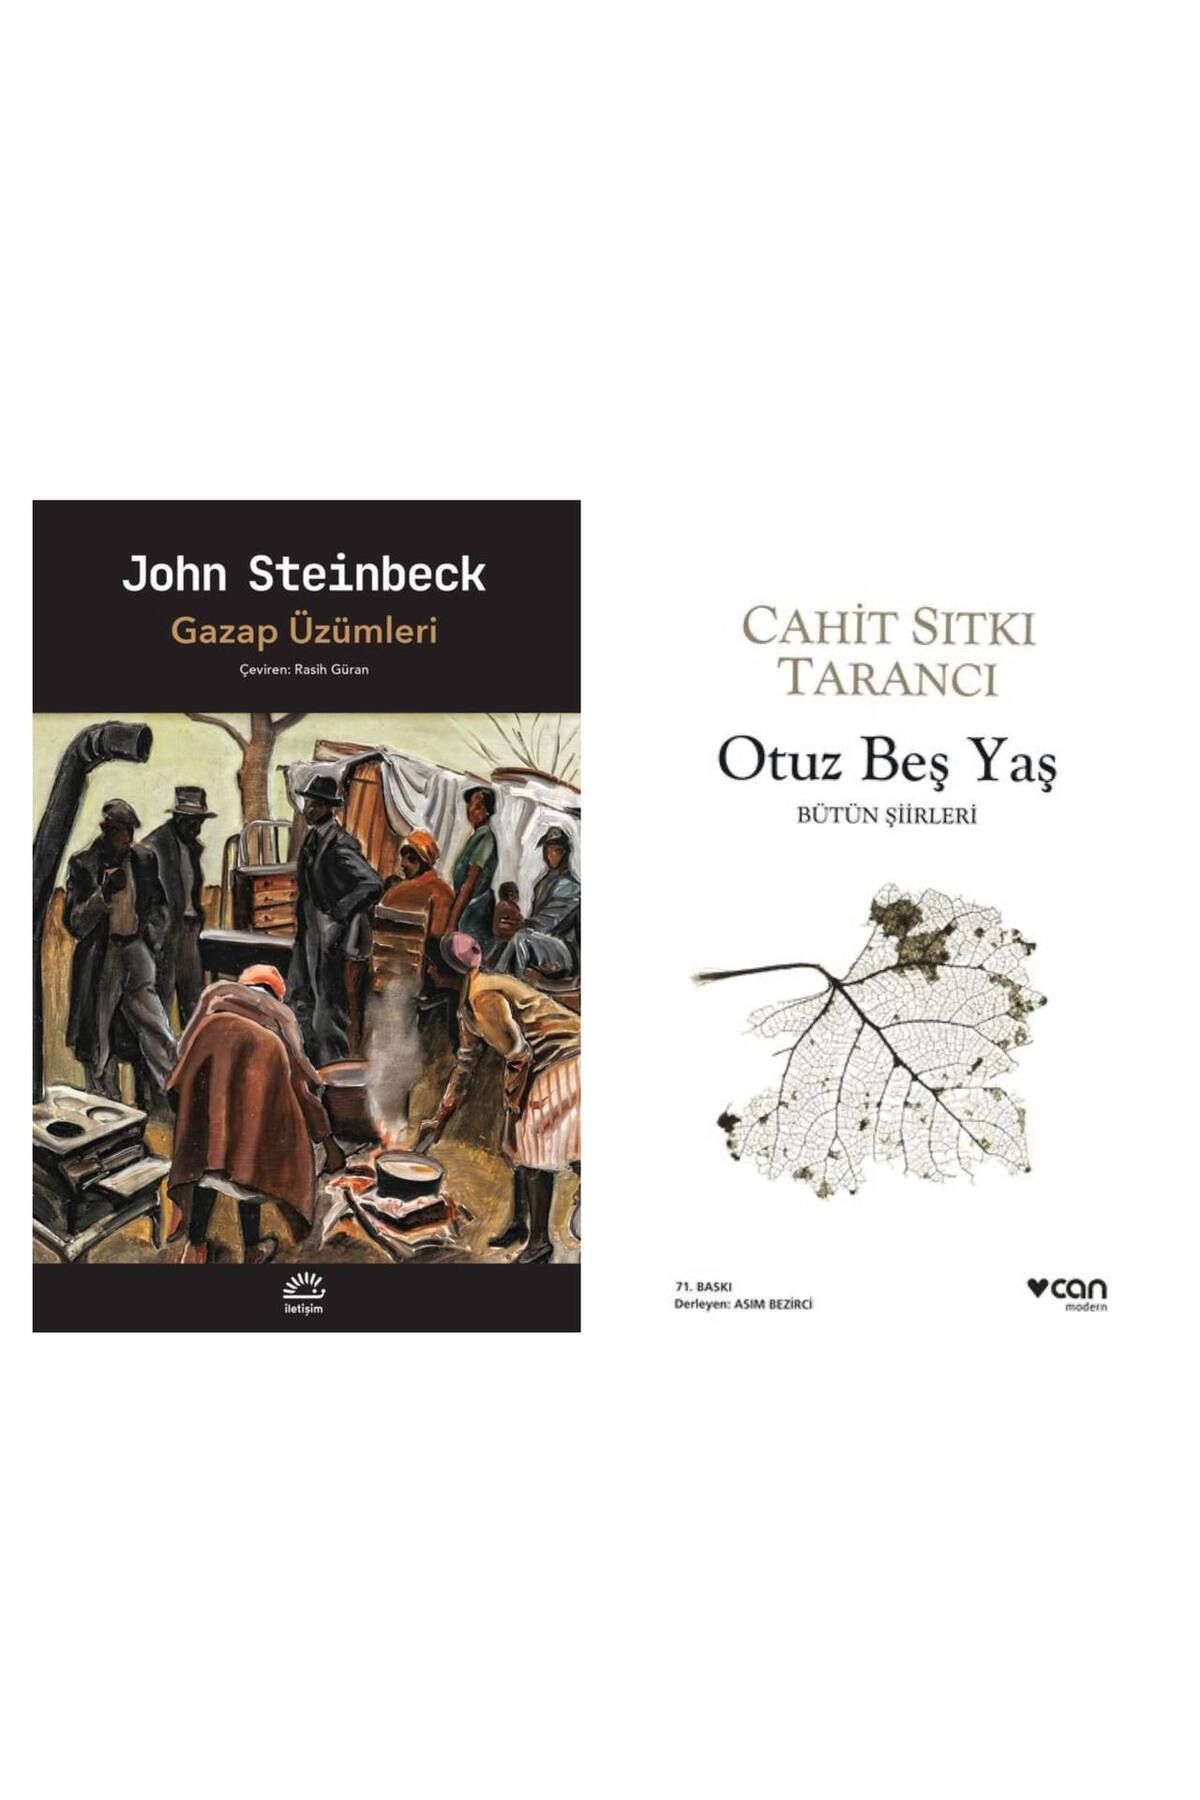 İletişim Yayınları Gazap Üzümleri - John Steinbeck - Otuz Beş Yaş - Cahit Sıtkı Tarancı